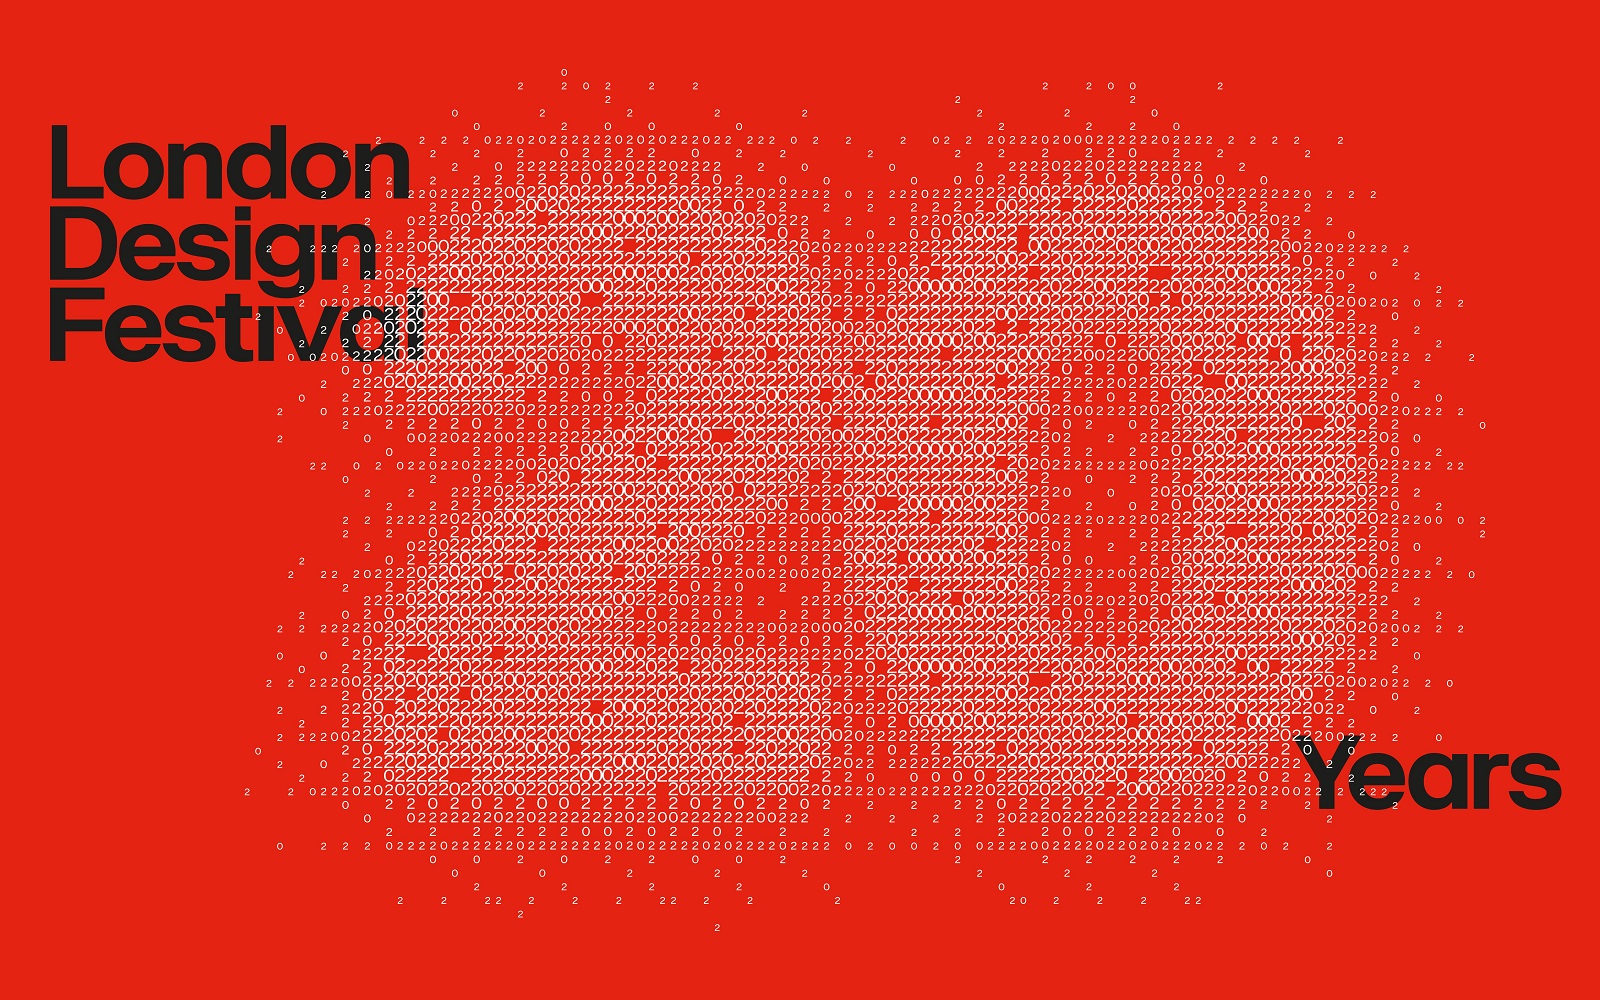 London Design Festival LDF22 20 year logo